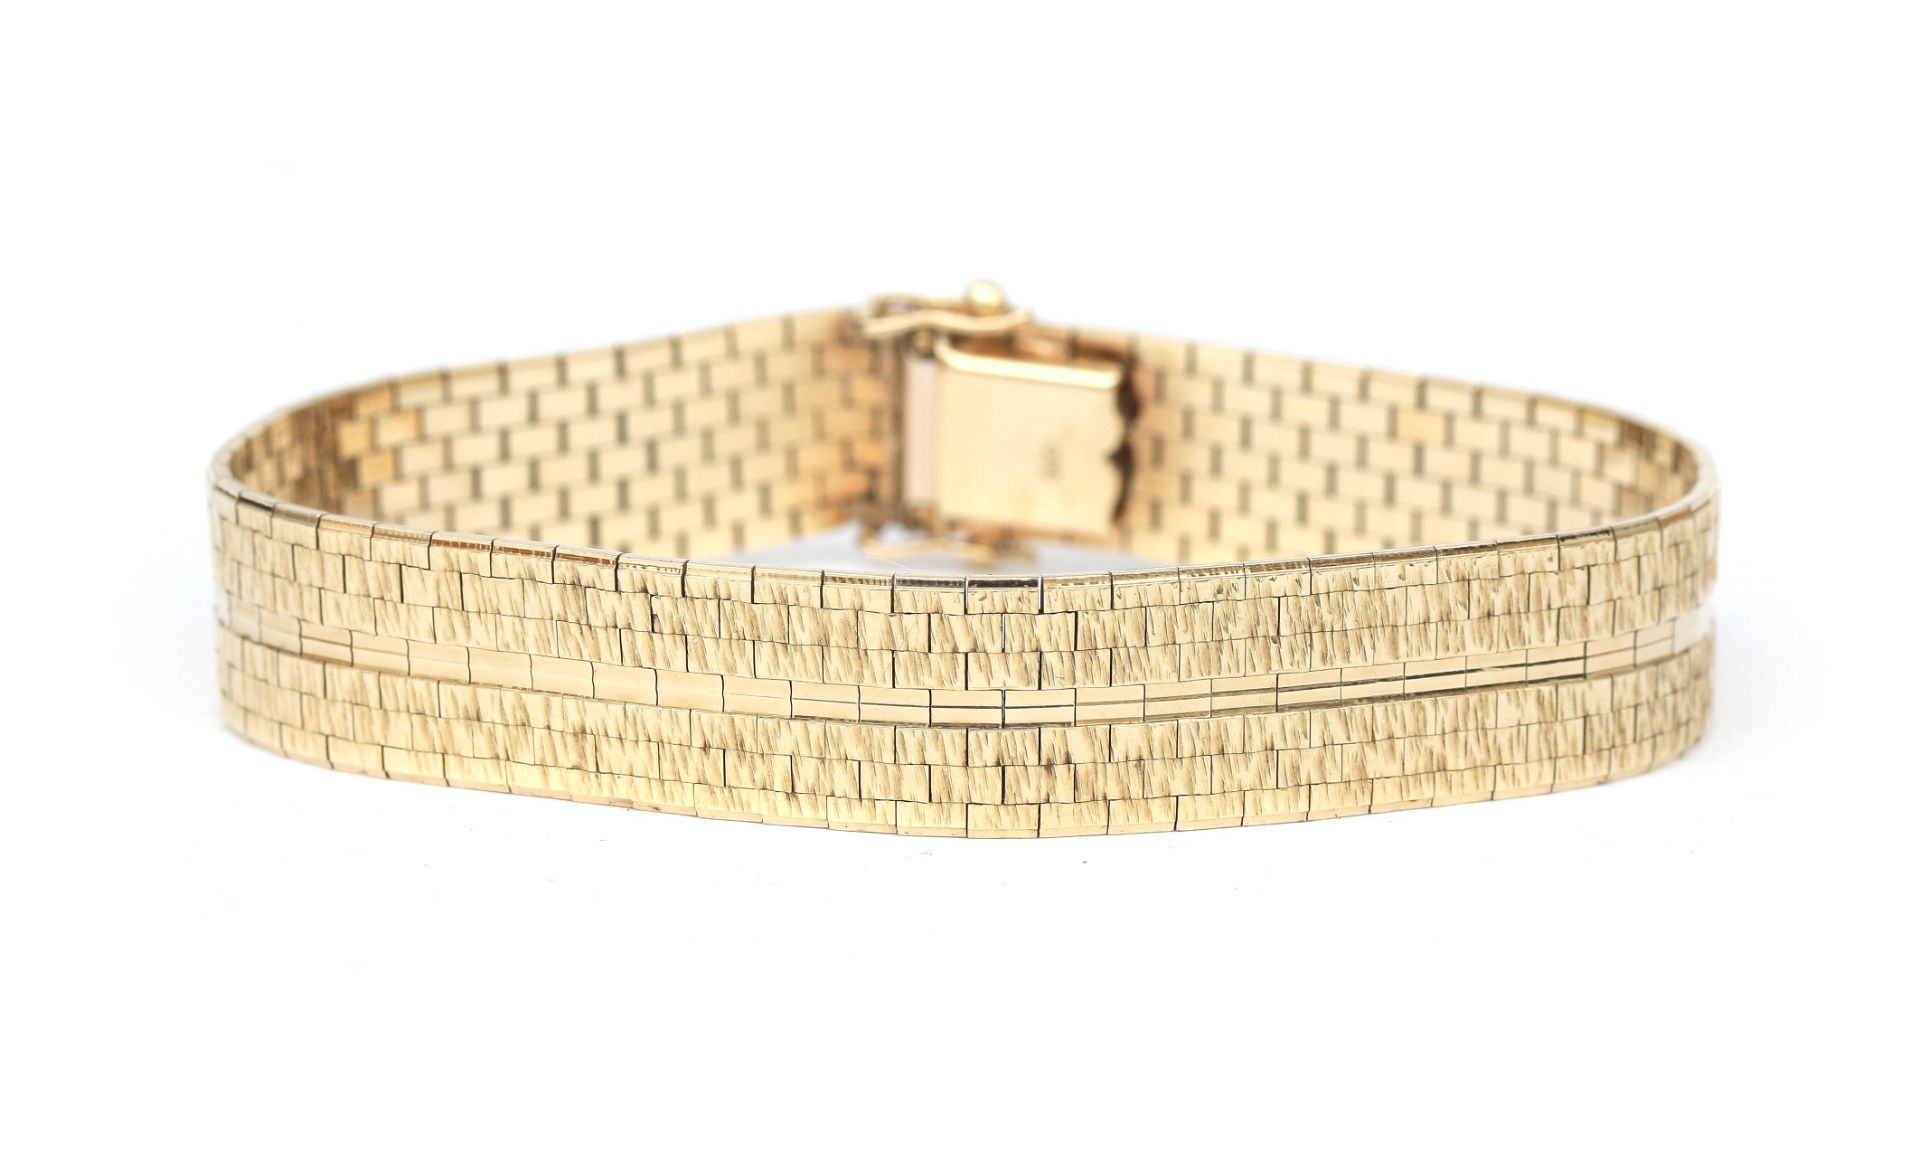 An 18 karat gold bracelet, ca. 1970